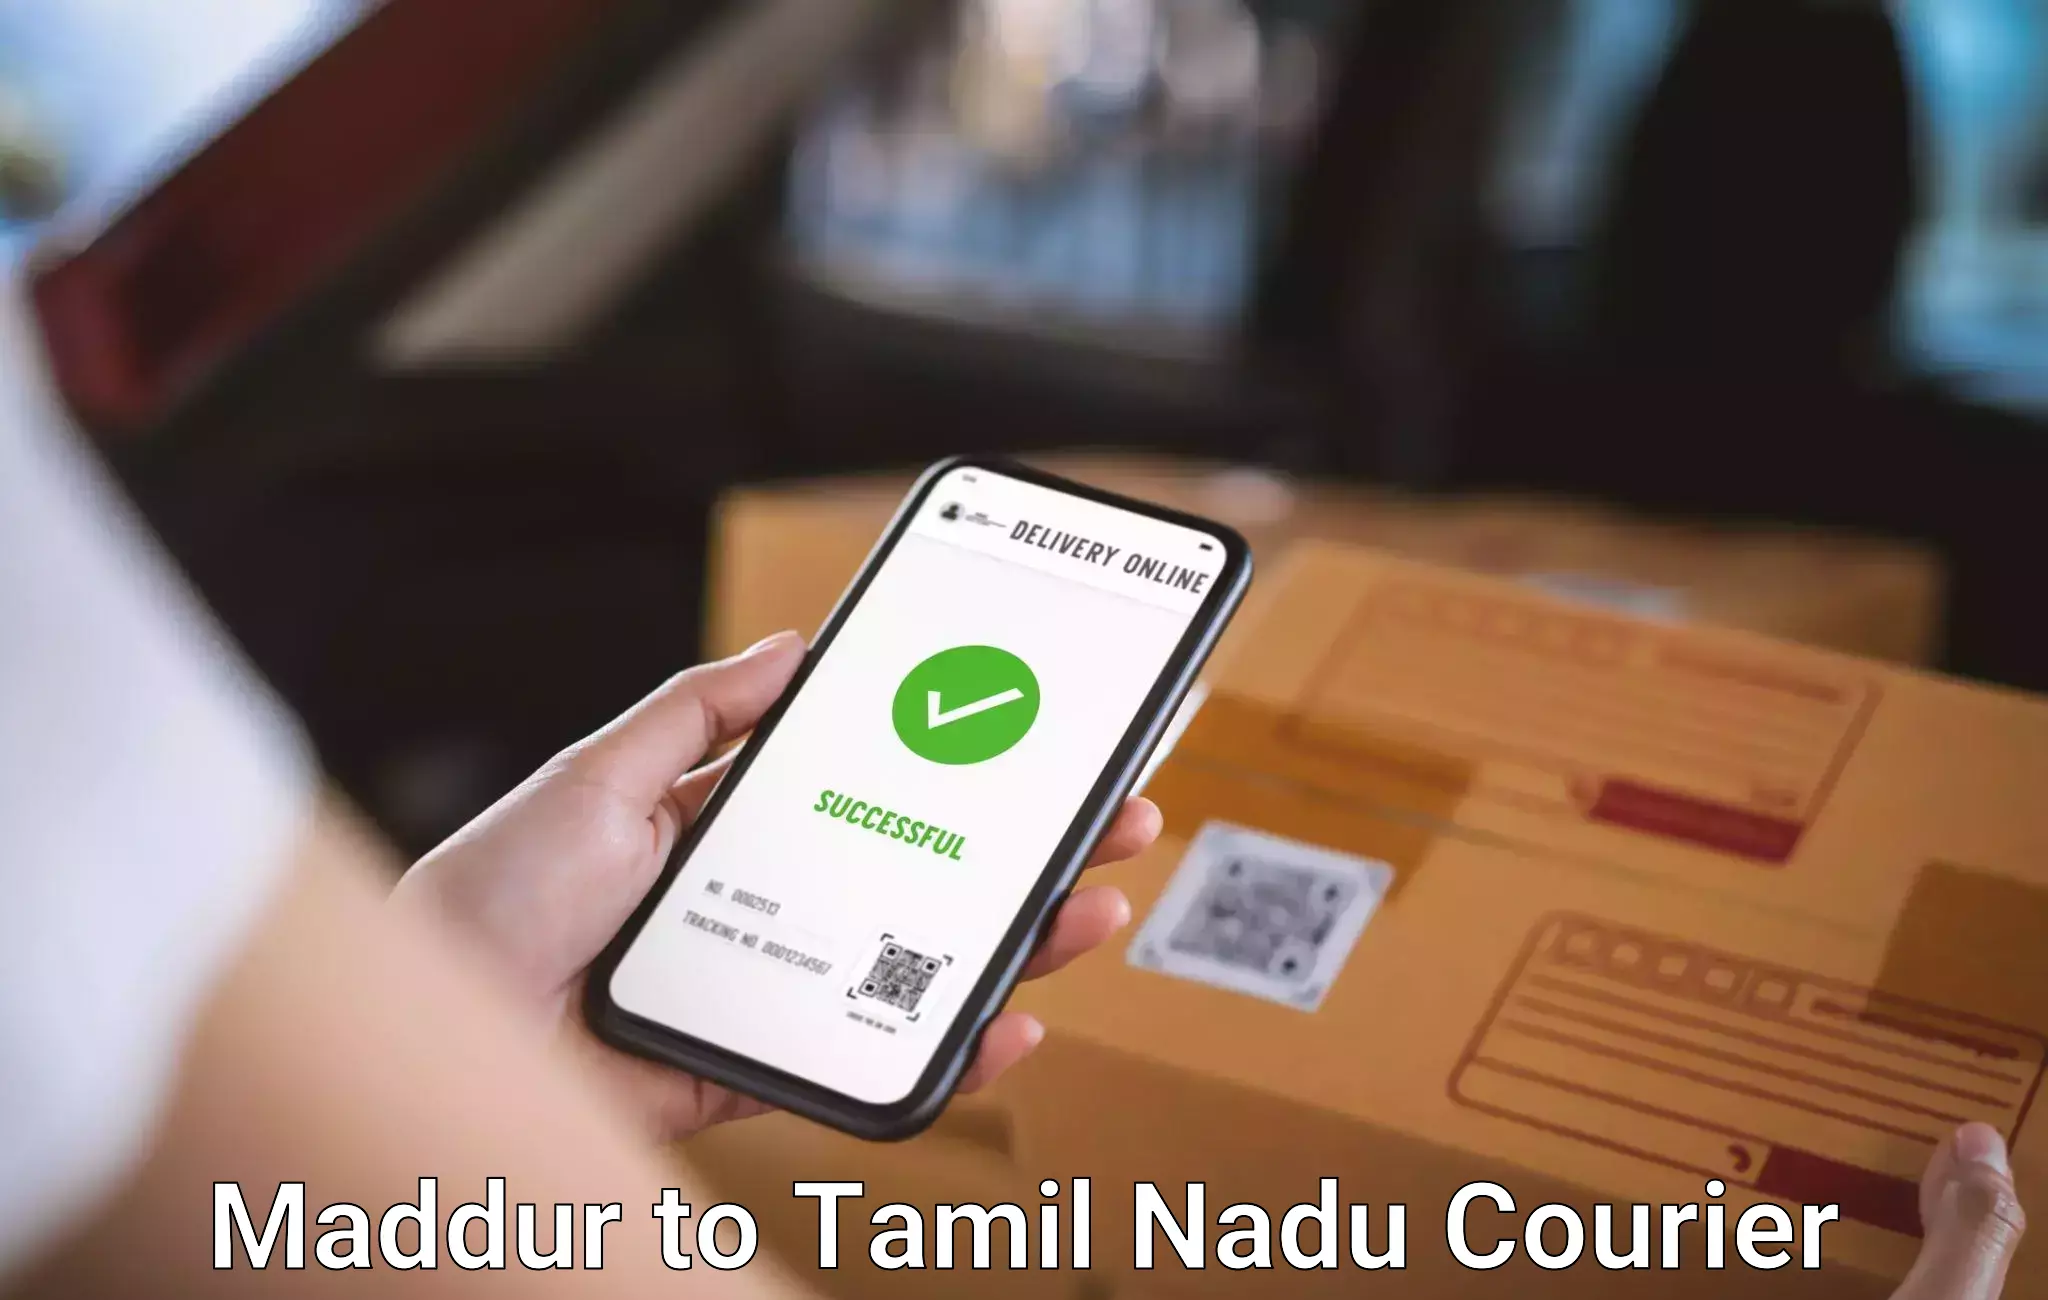 Luggage shipment logistics in Maddur to Tamil Nadu